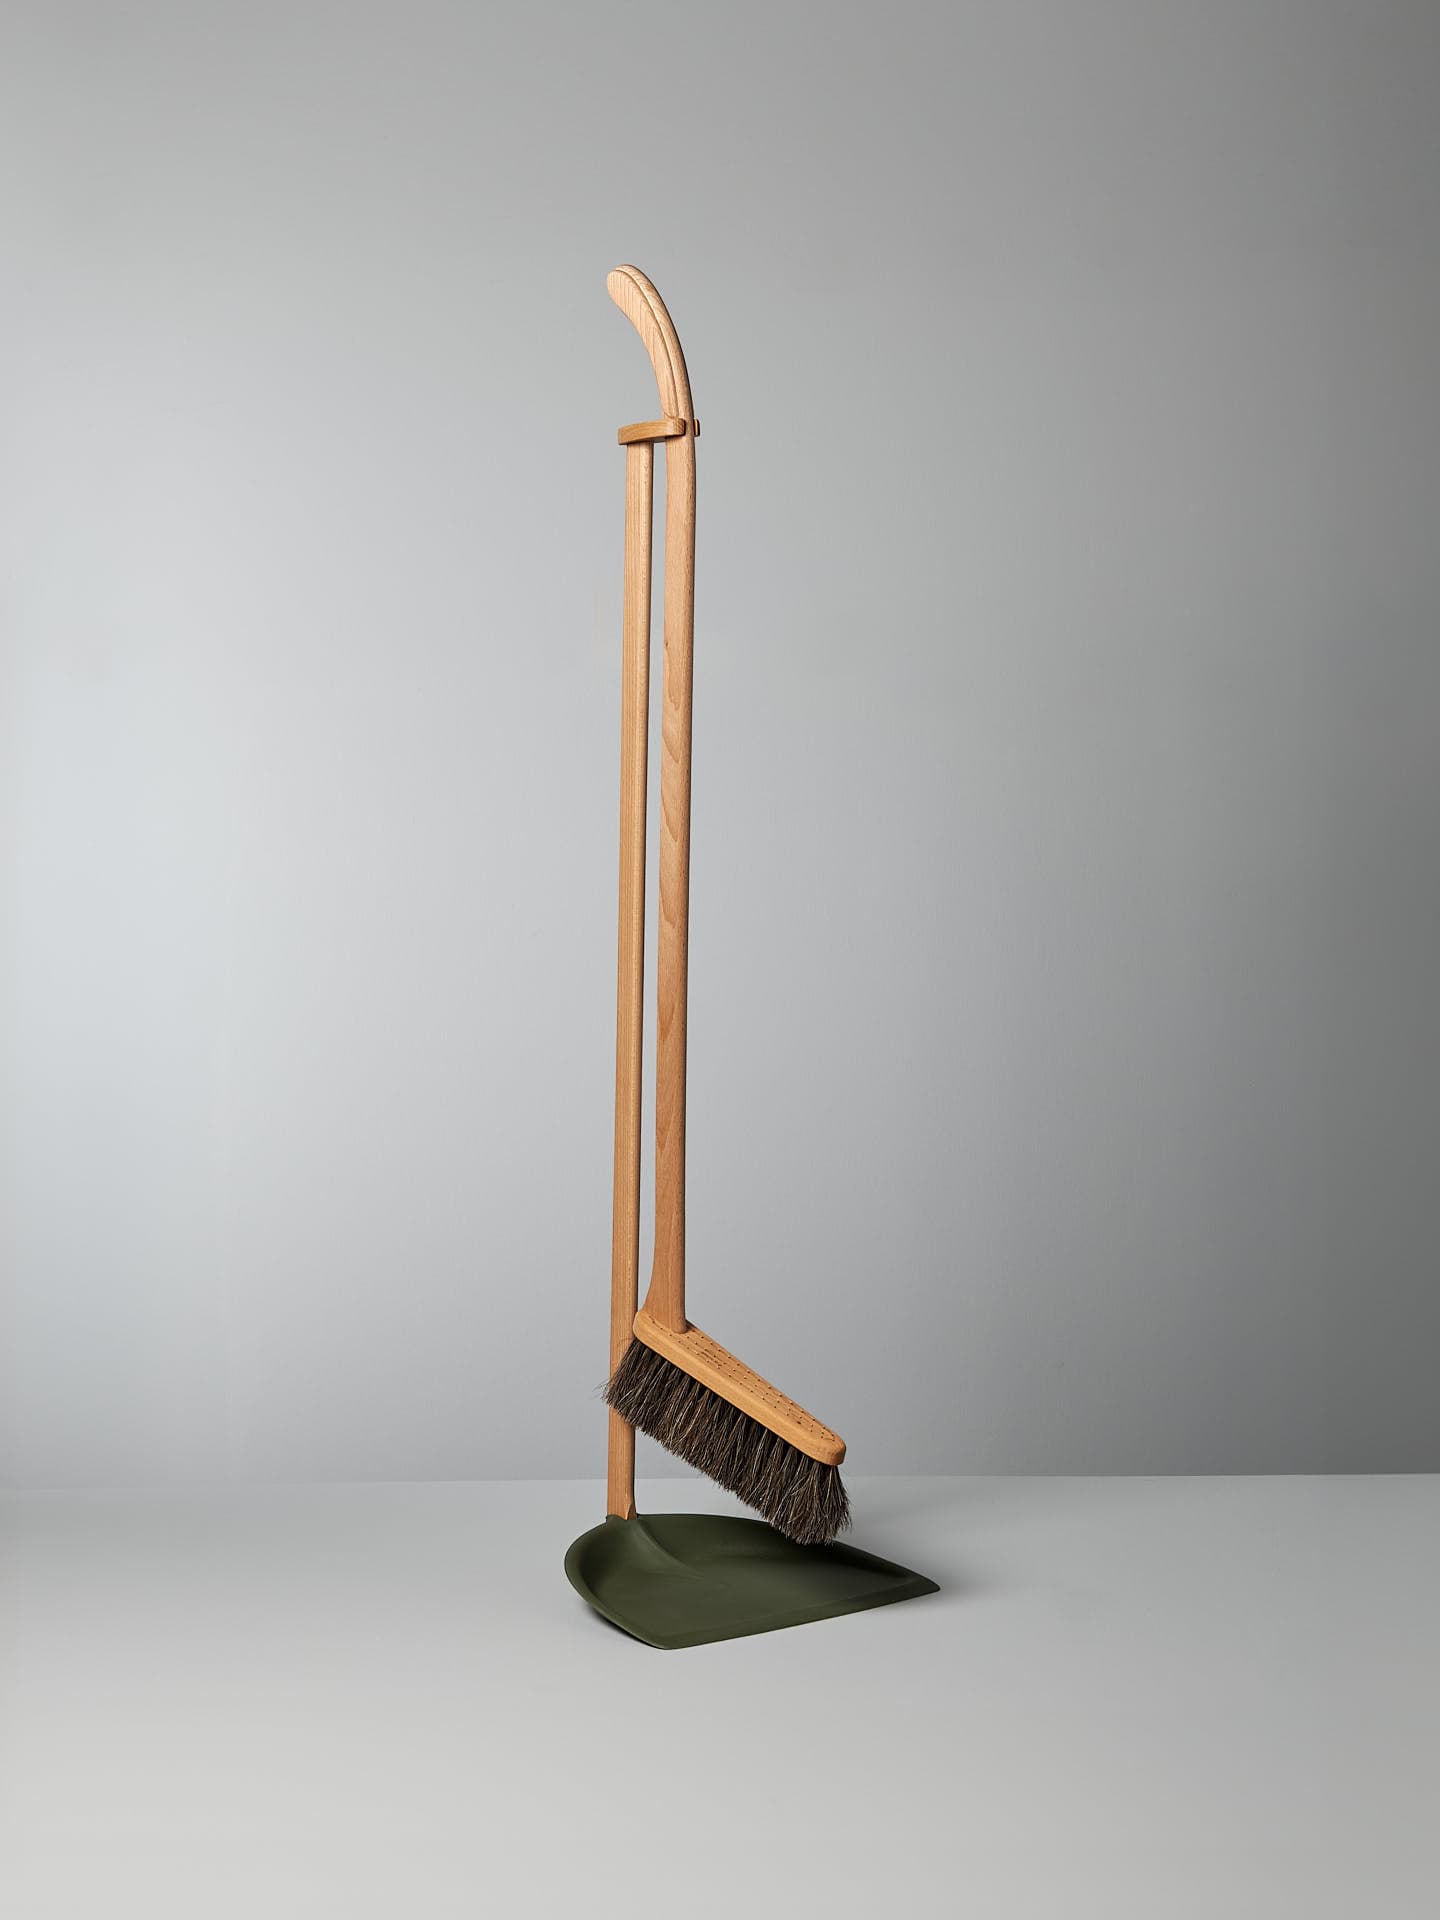 A Long Handled Dustpan & Brush Set – Moss Green from Iris Hantverk stands upright next to a green bio-polyethylene dustpan, both set against a plain gray background.